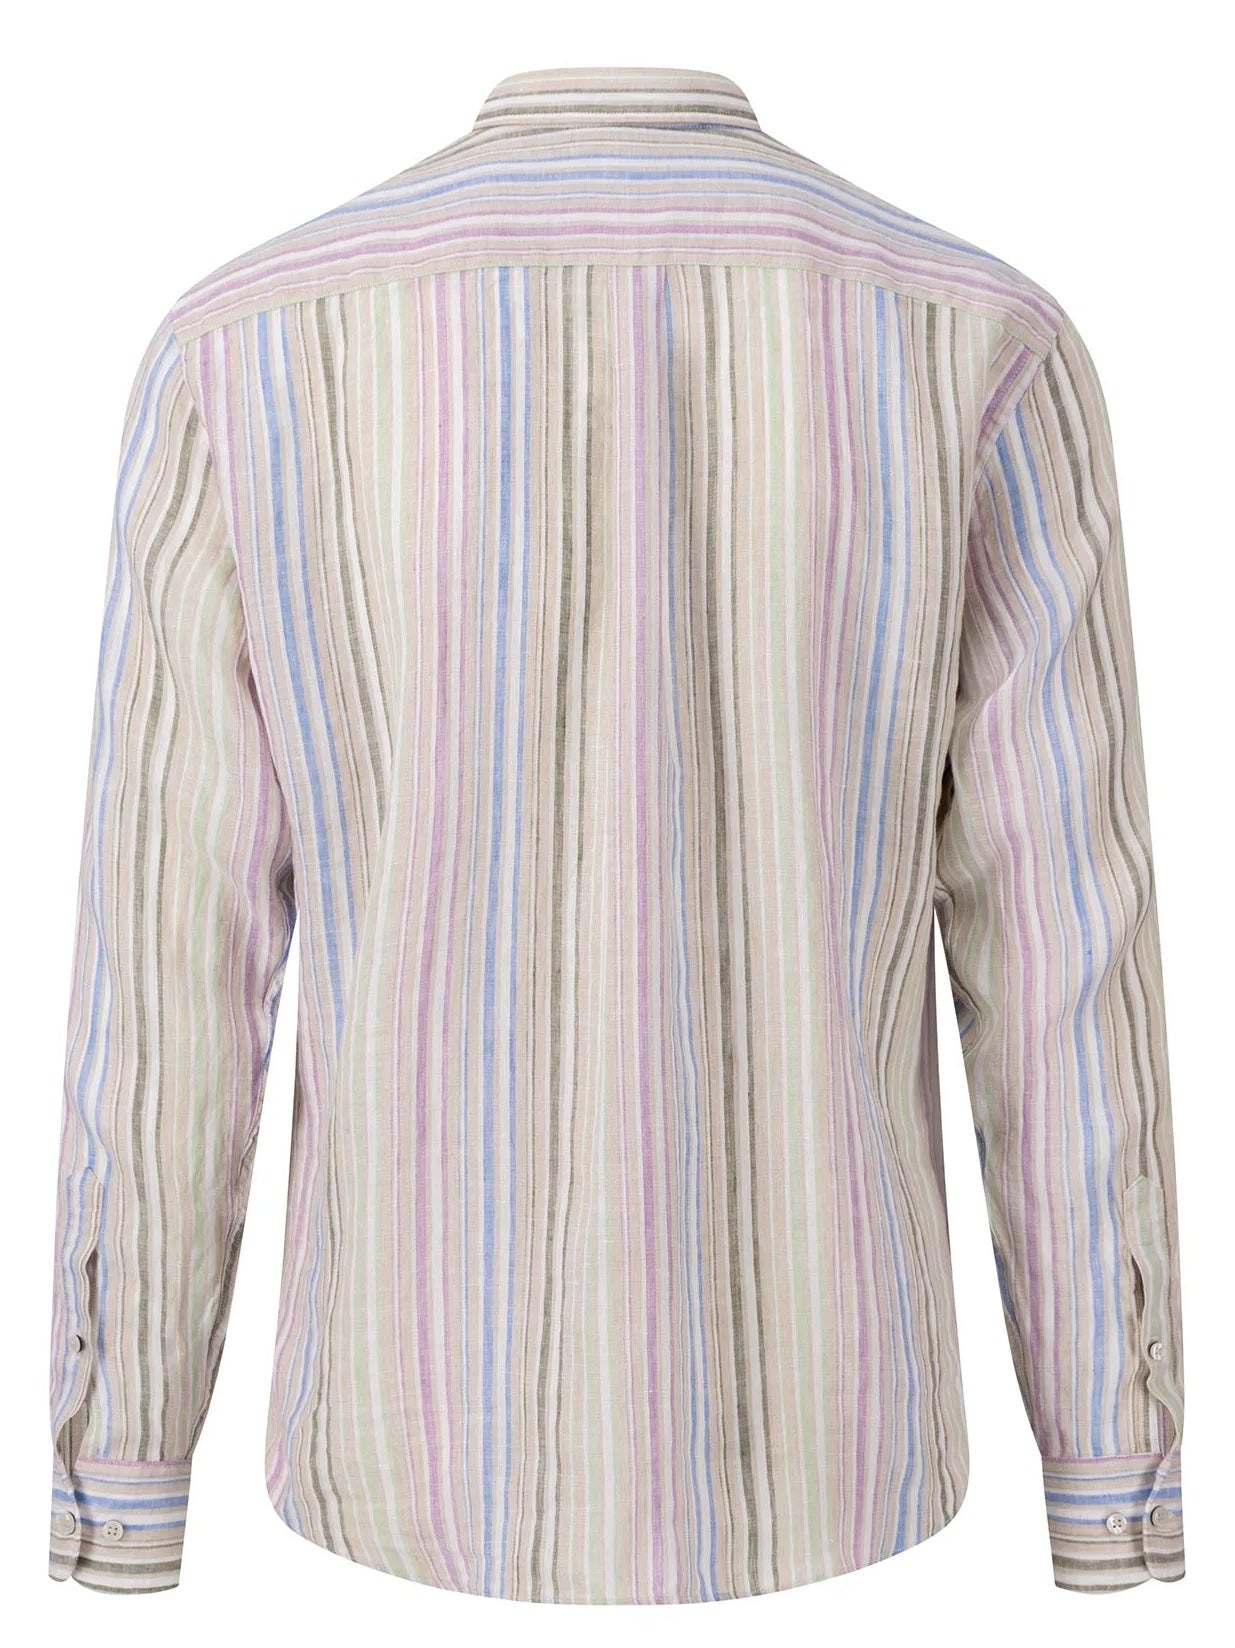 FYNCH HATTON Pure Linen Shirt - Men's – Soft Green Stripes